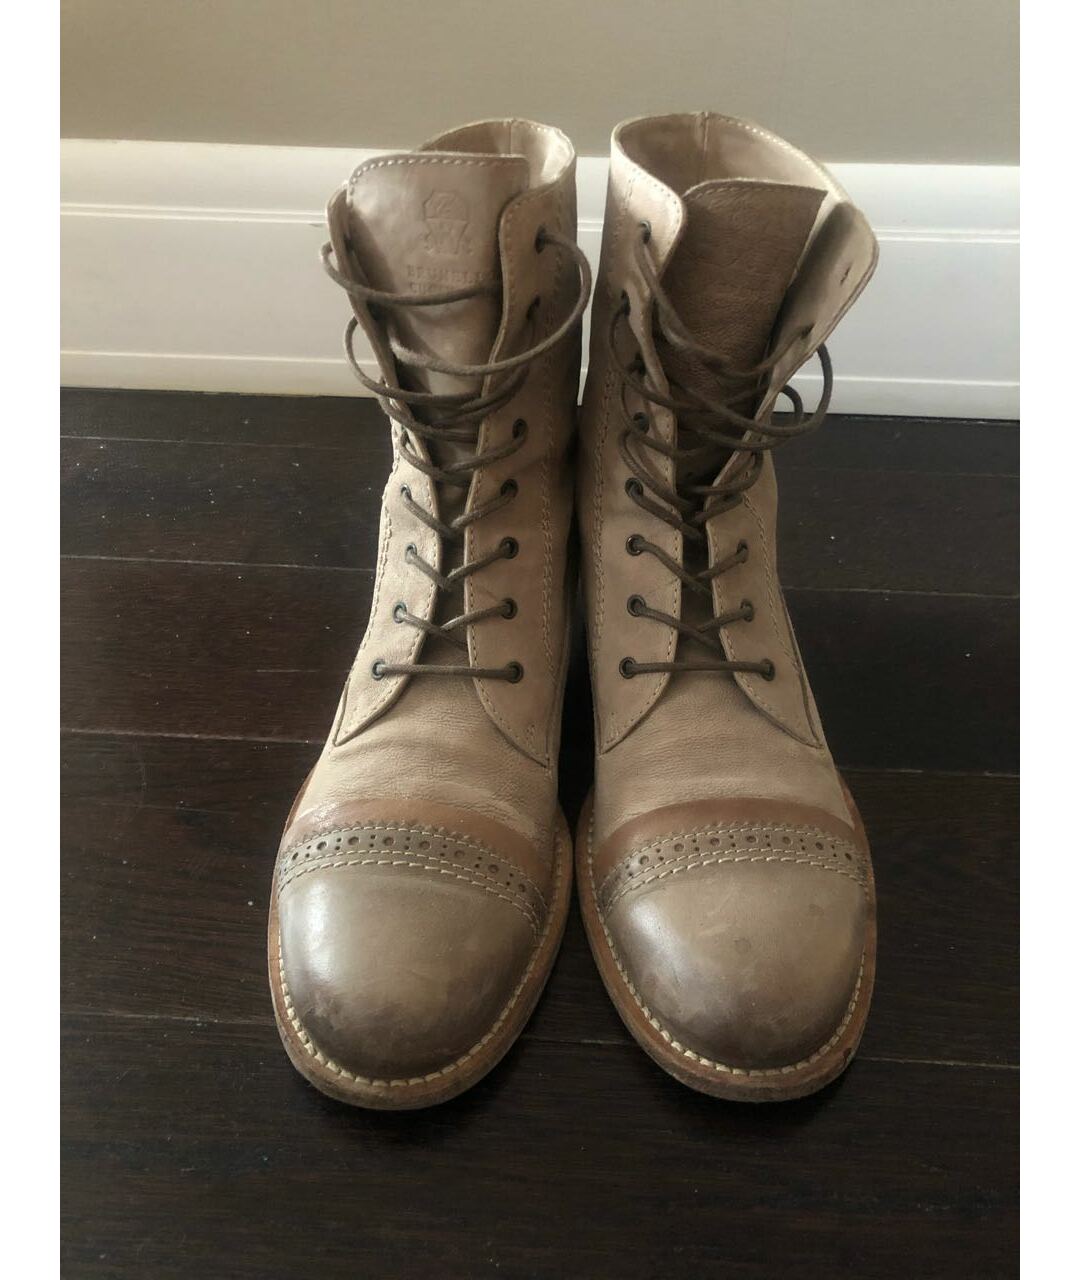 BRUNELLO CUCINELLI Бежевые кожаные ботинки, фото 2